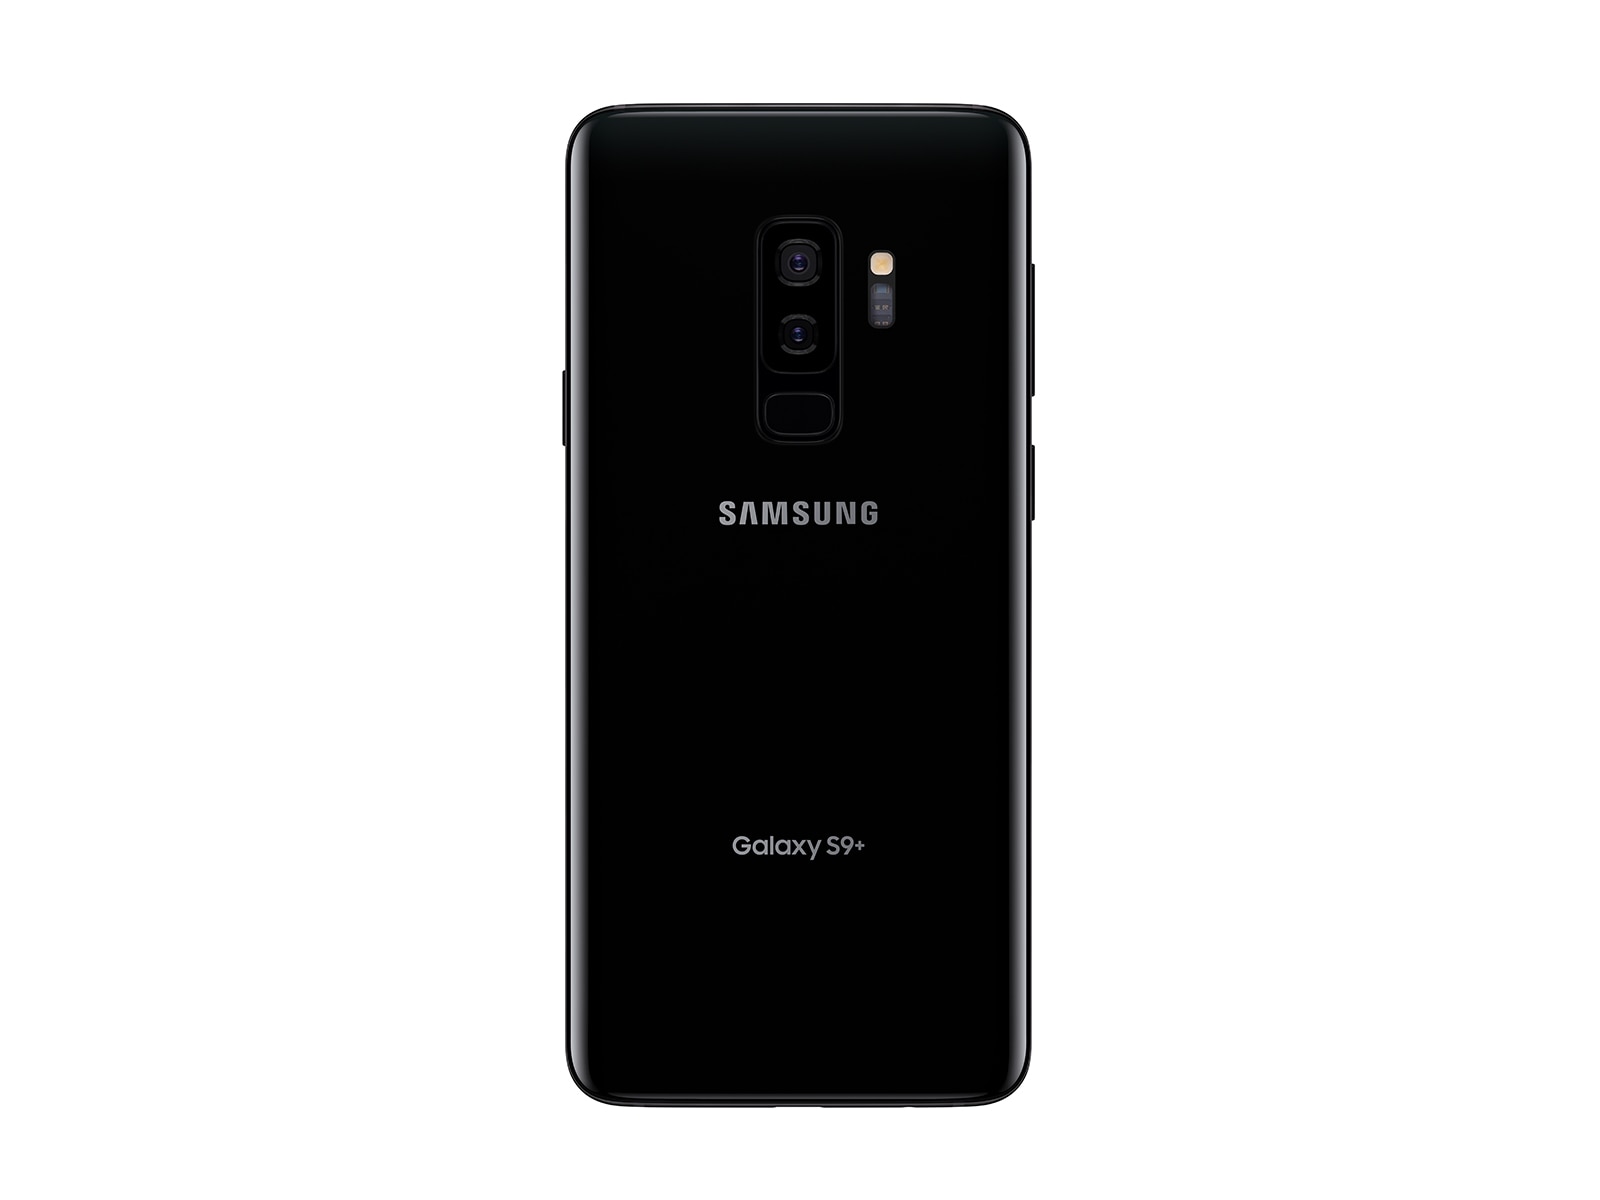 Samsung Galaxy 64gb